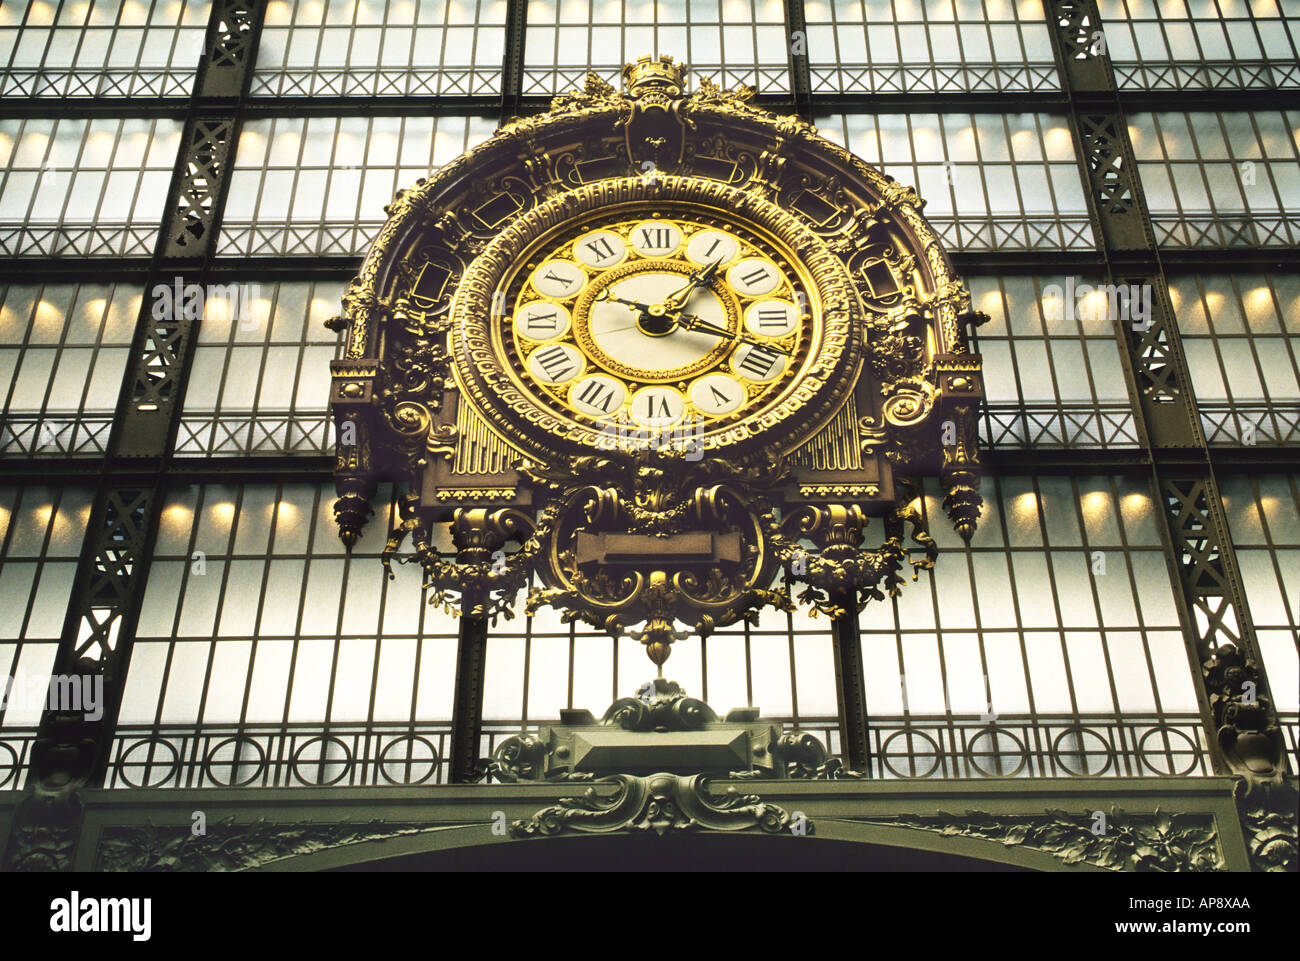 Paris Musee d'Orsay museo interno famoso orologio. Ex stazione ferroviaria Gare d'Orsay del XIX secolo. Rive della Senna sito patrimonio mondiale dell'UNESCO. Francia Foto Stock